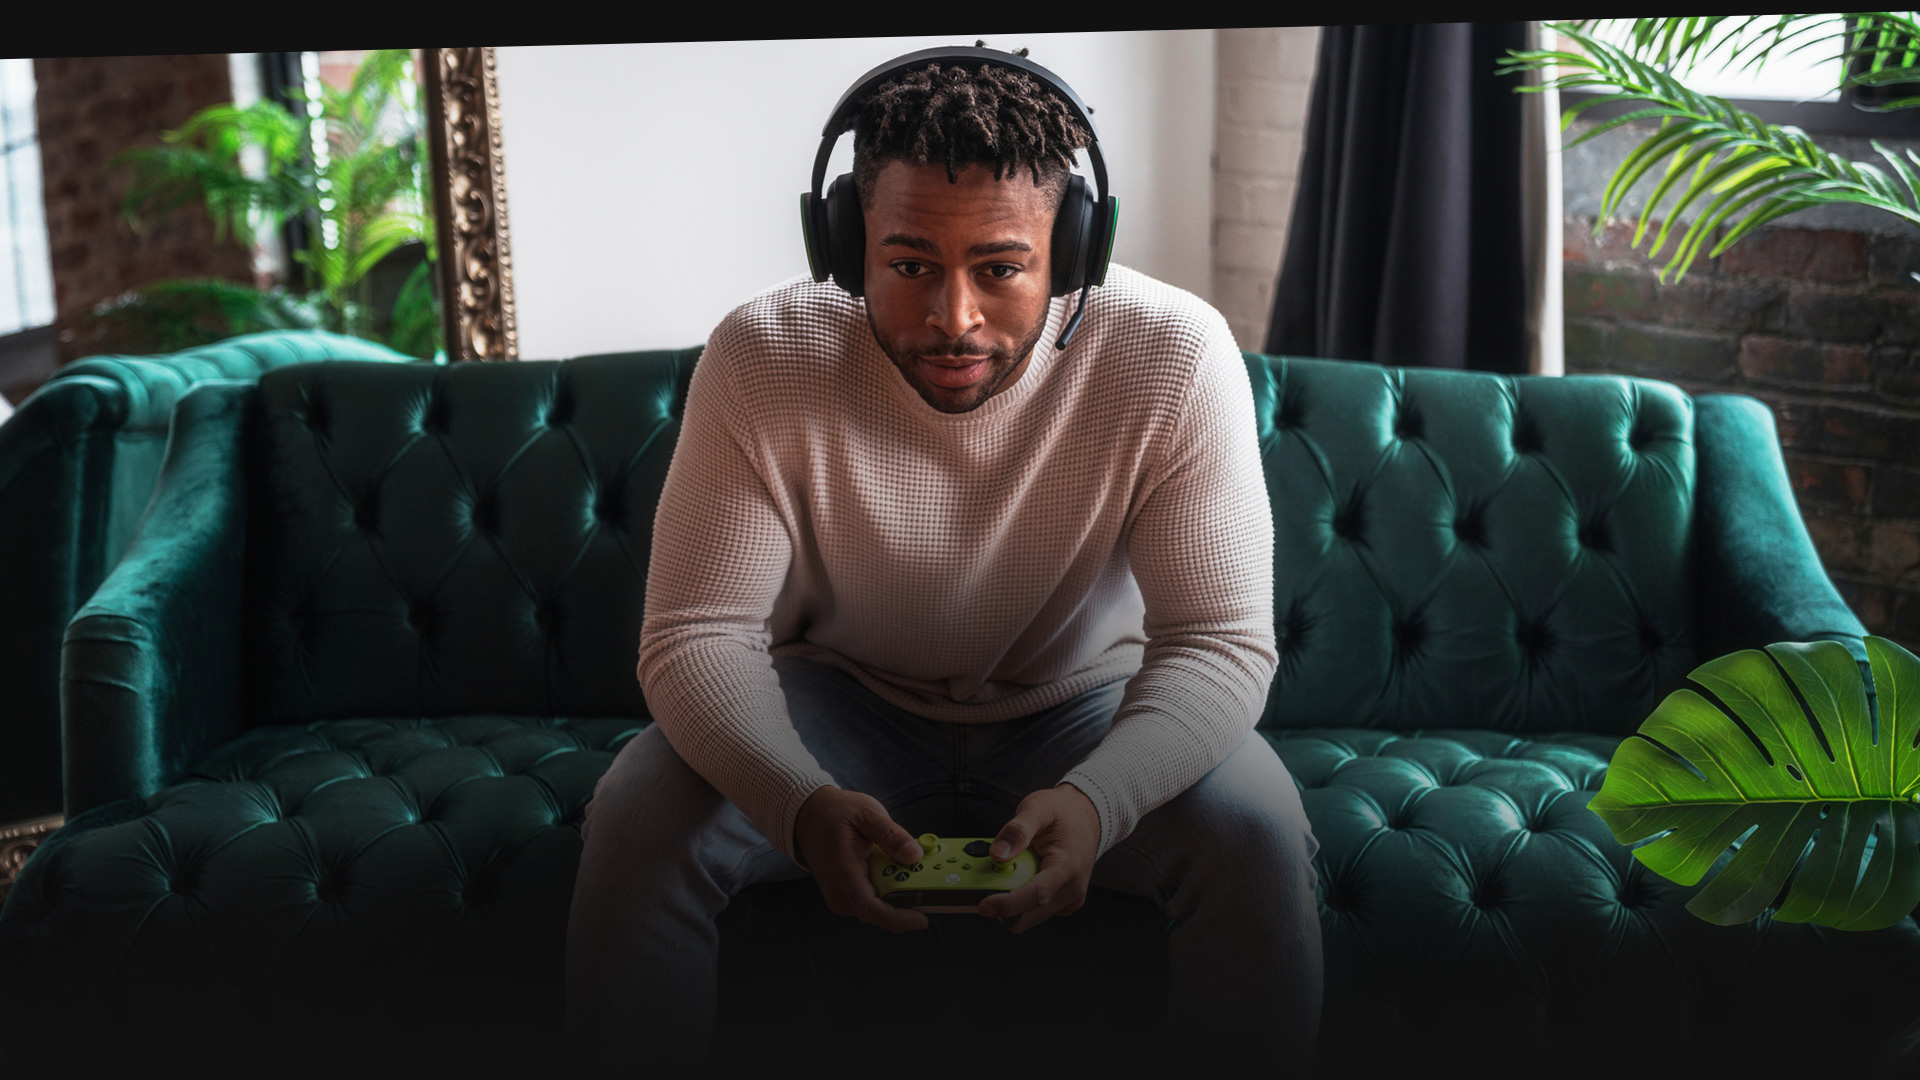 Uma pessoa usando um headset jogando Xbox em um sofá